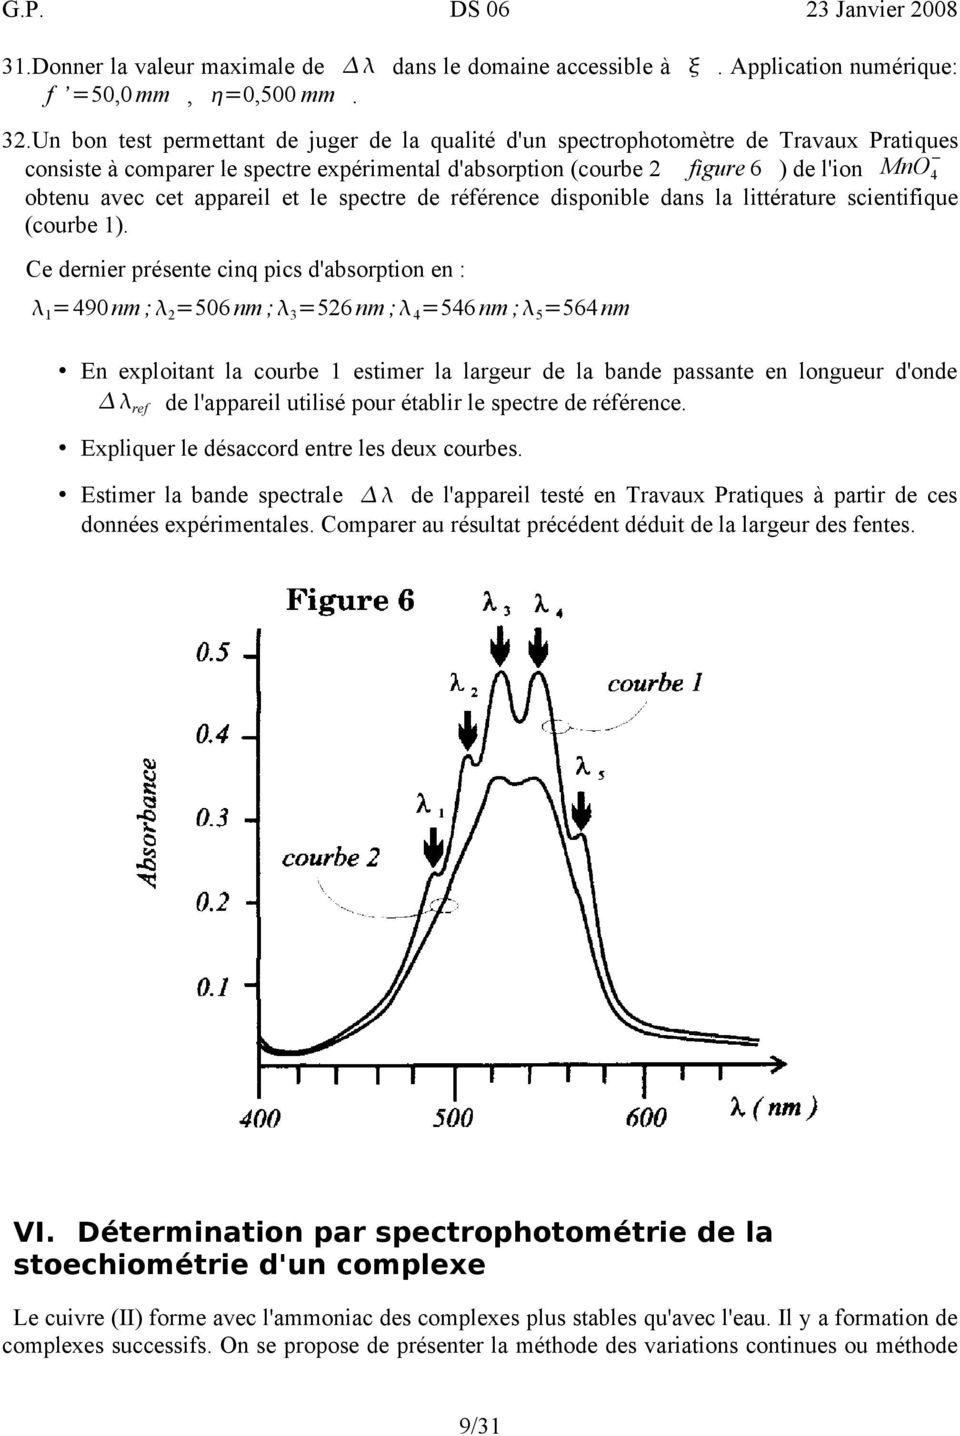 appareil et le spectre de référence disponible dans la littérature scientifique (courbe 1).